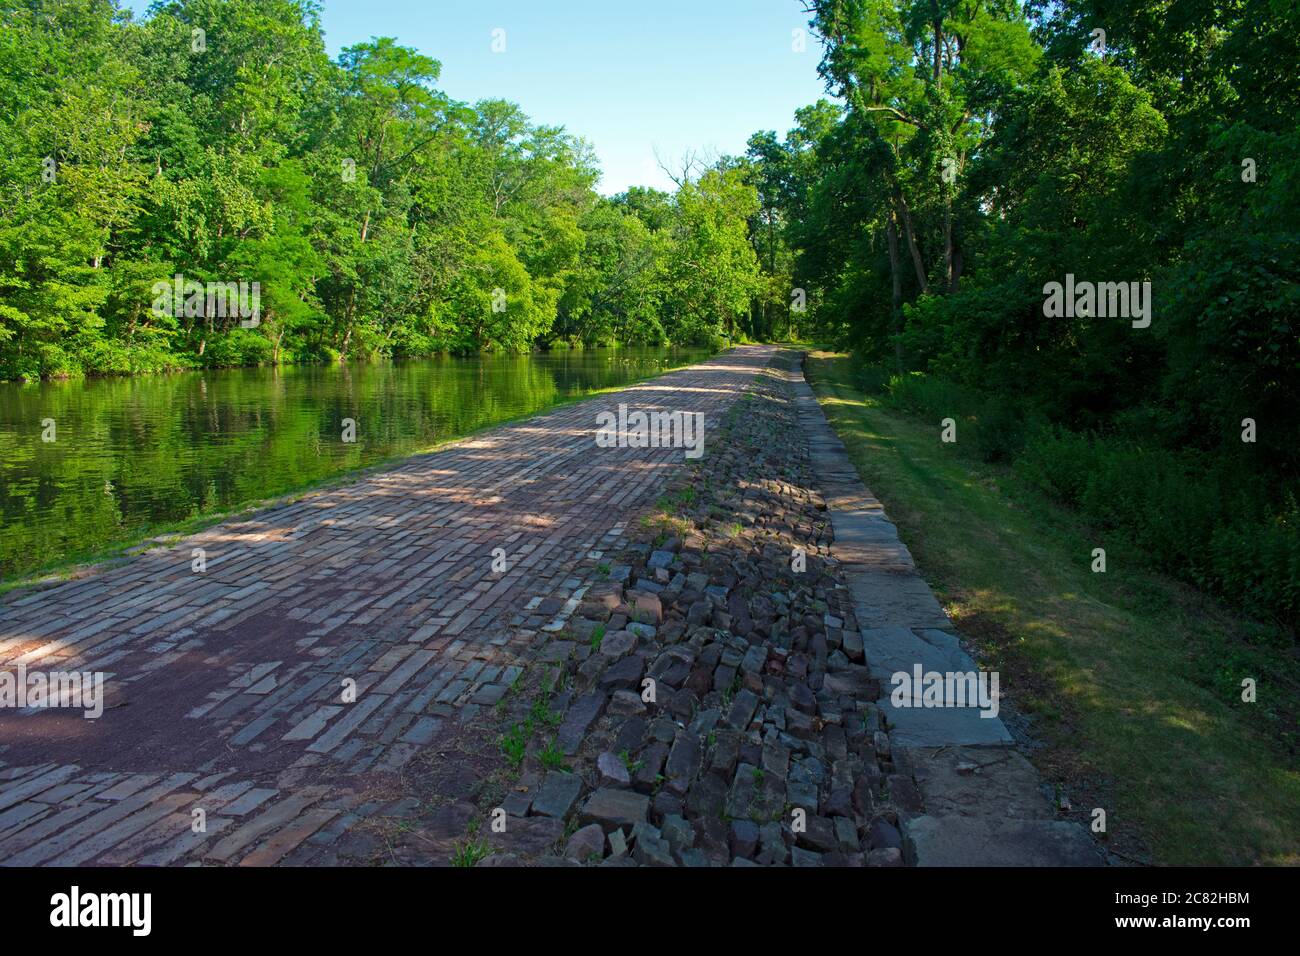 Fußweg entlang des Delaware und Raritan Canal am Colonial Park. Dieser Abschnitt des Weges ist mit Ziegelsteinen gepflastert, die in parallelen Linien angeordnet sind. -04 Stockfoto